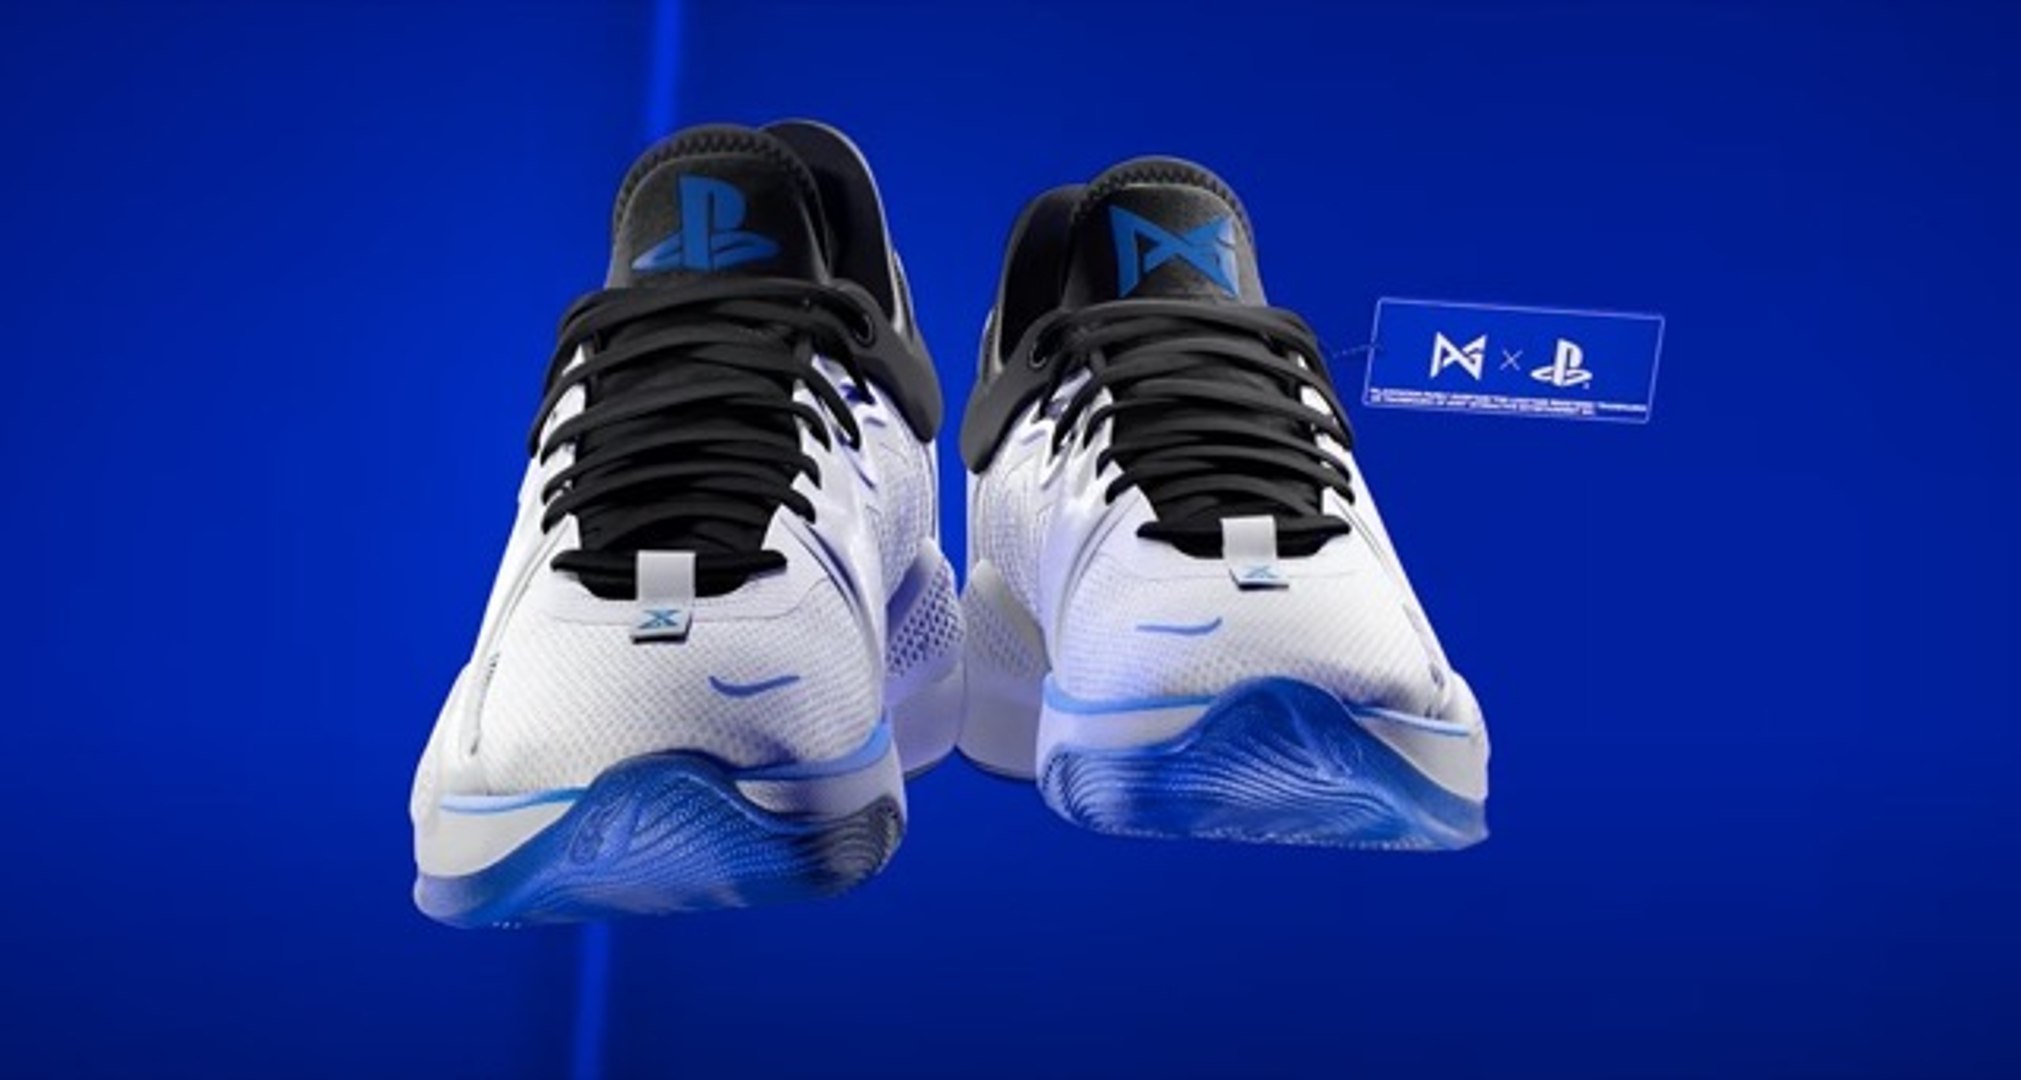 Les Nike aux couleurs de la Playstation 5 bientôt disponibles - Vidéo  Dailymotion